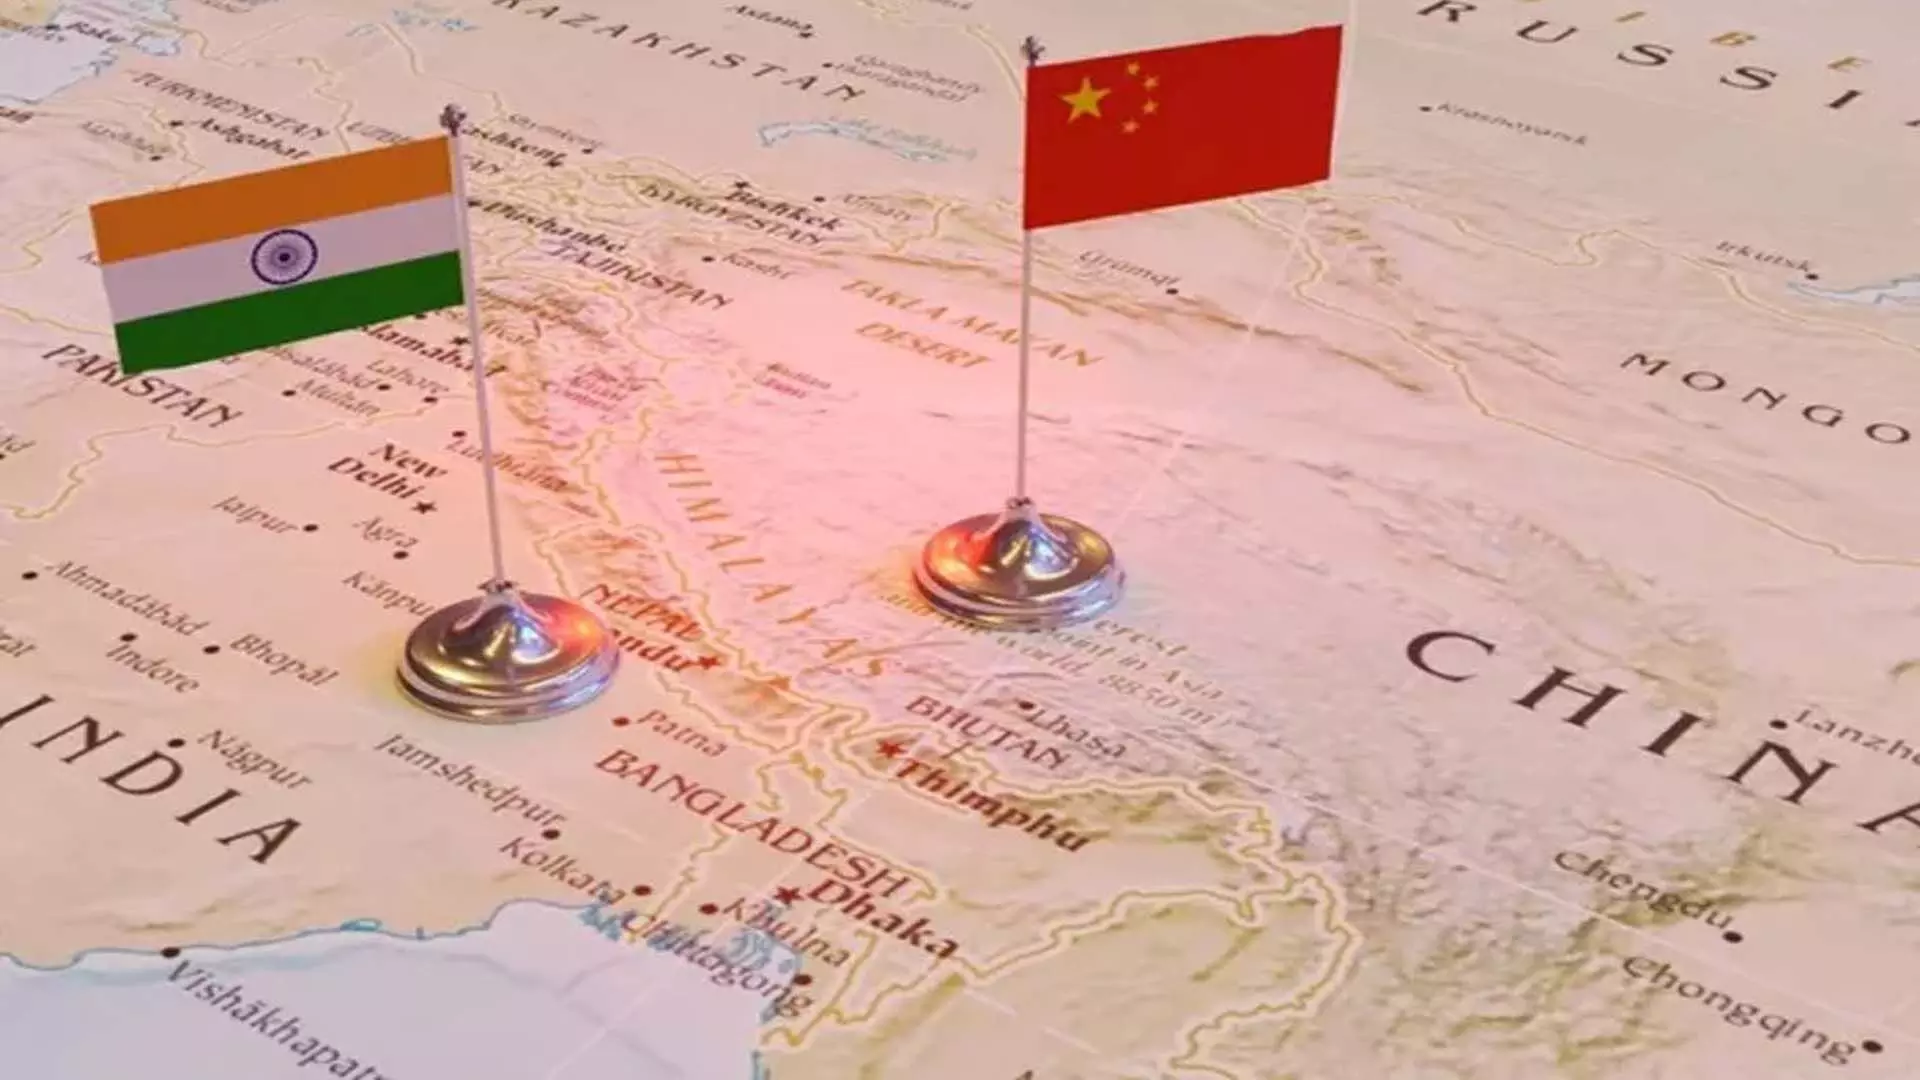 भारत ने अरुणाचल प्रदेश पर चीन के बेतुके दावों को खारिज किया